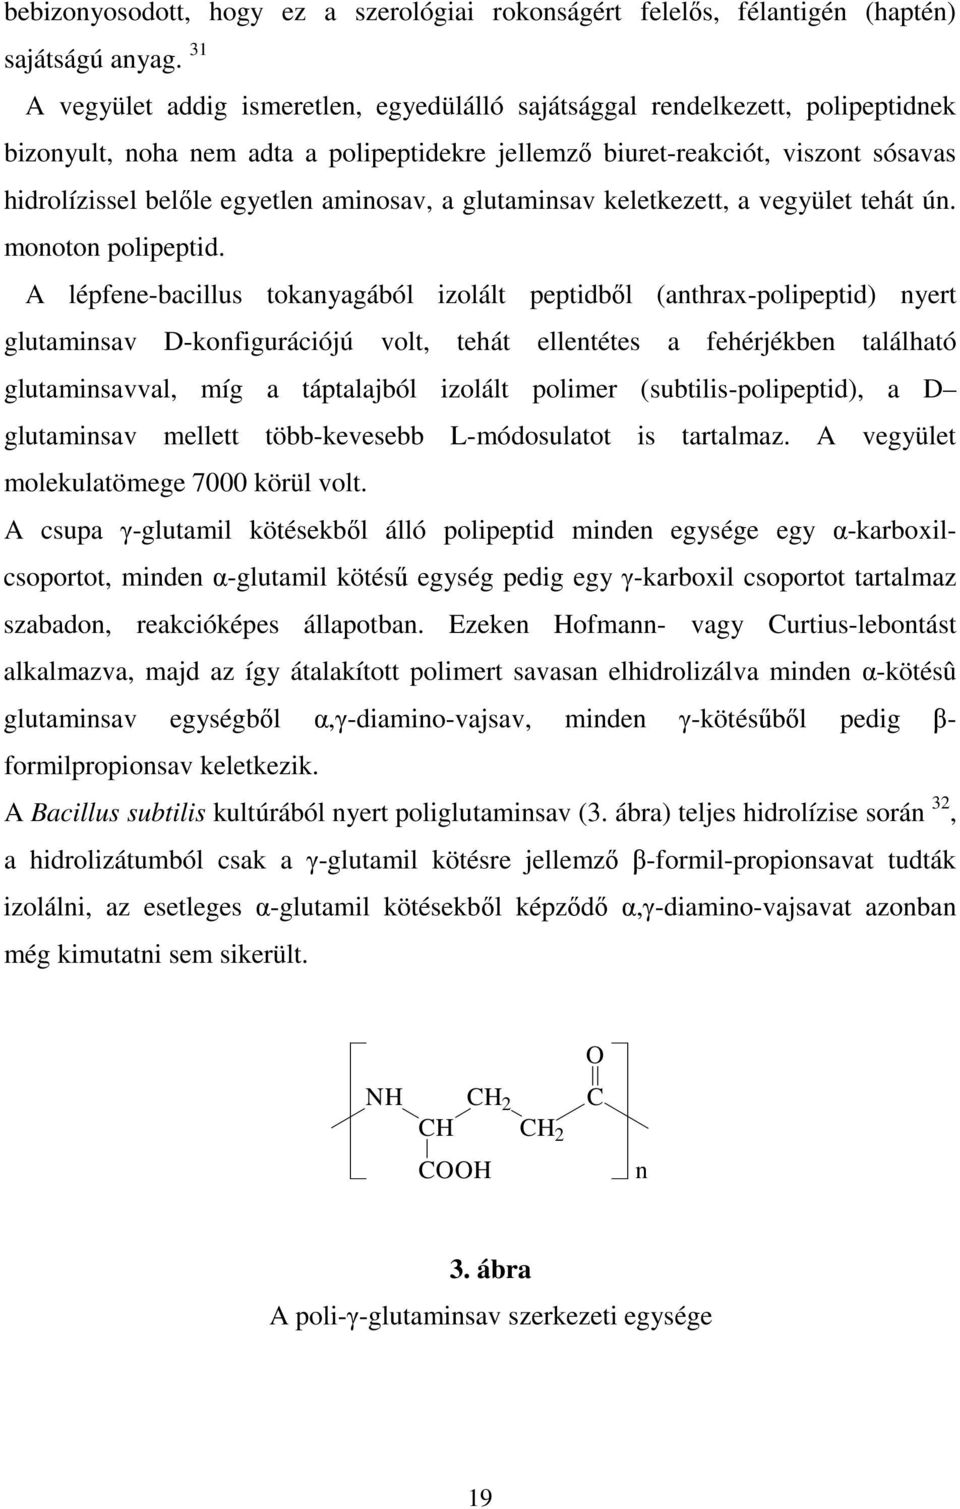 aminosav, a glutaminsav keletkezett, a vegyület tehát ún. monoton polipeptid.